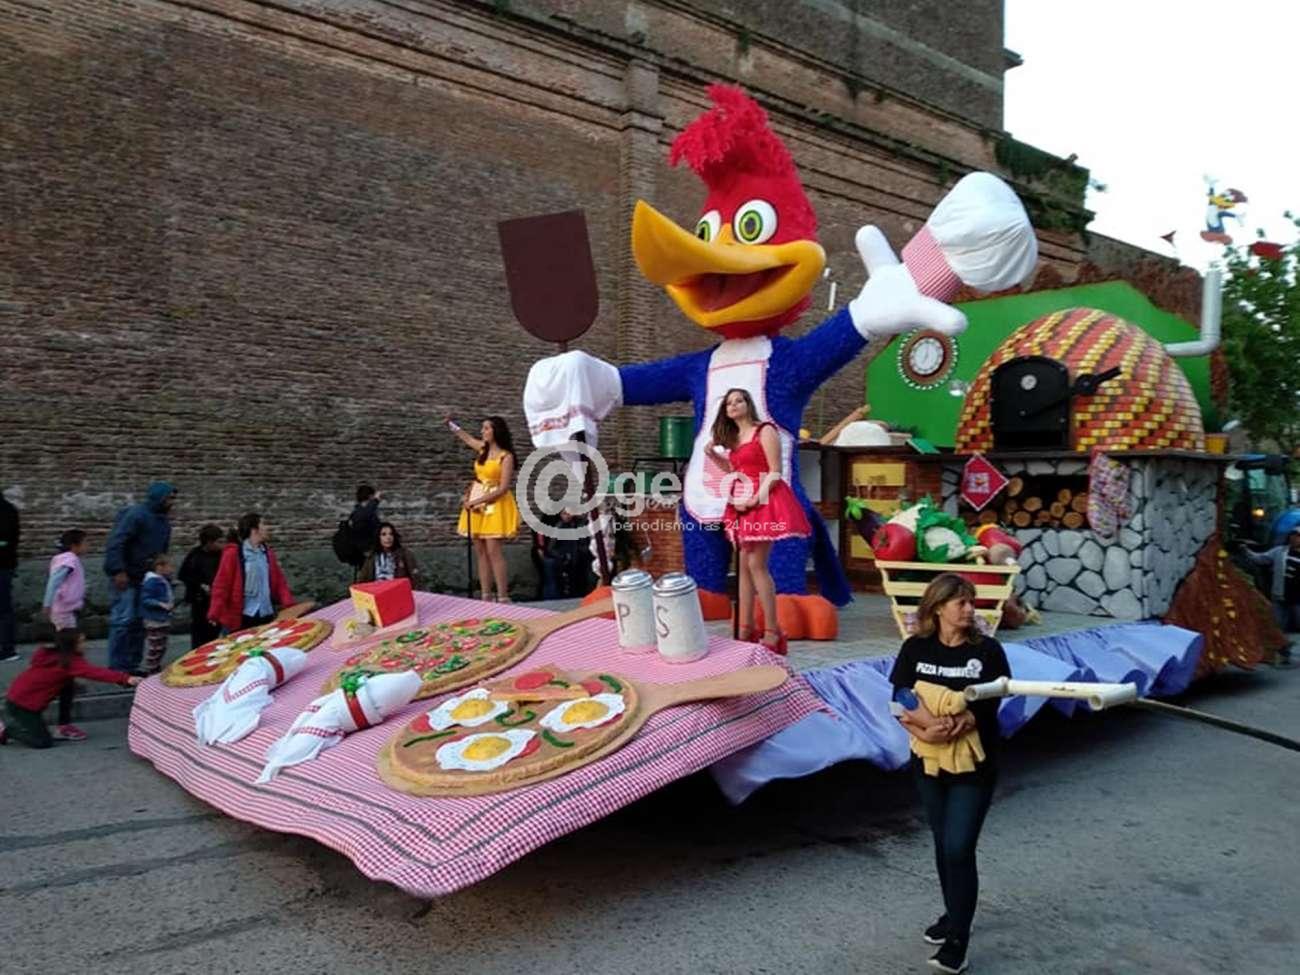 AGESOR - La carroza 7 ¨Pizza Primavera¨ de los sextos unidos fue la  ganadora en la Fiesta de la Primavera doloreña